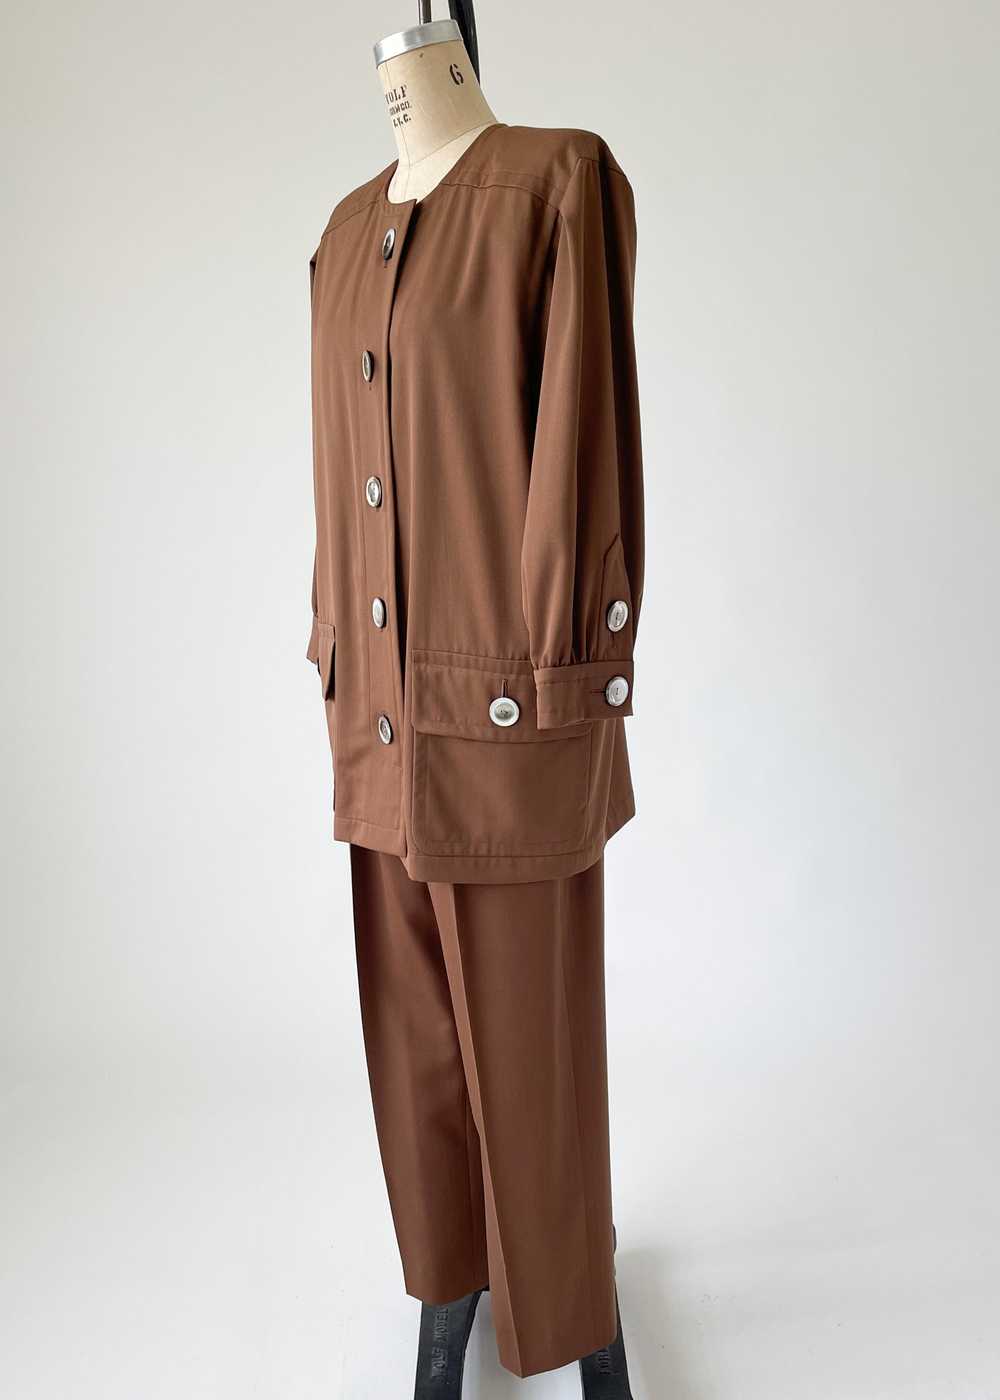 Vintage 1980s Yves Saint Laurent Pant Suit - image 6